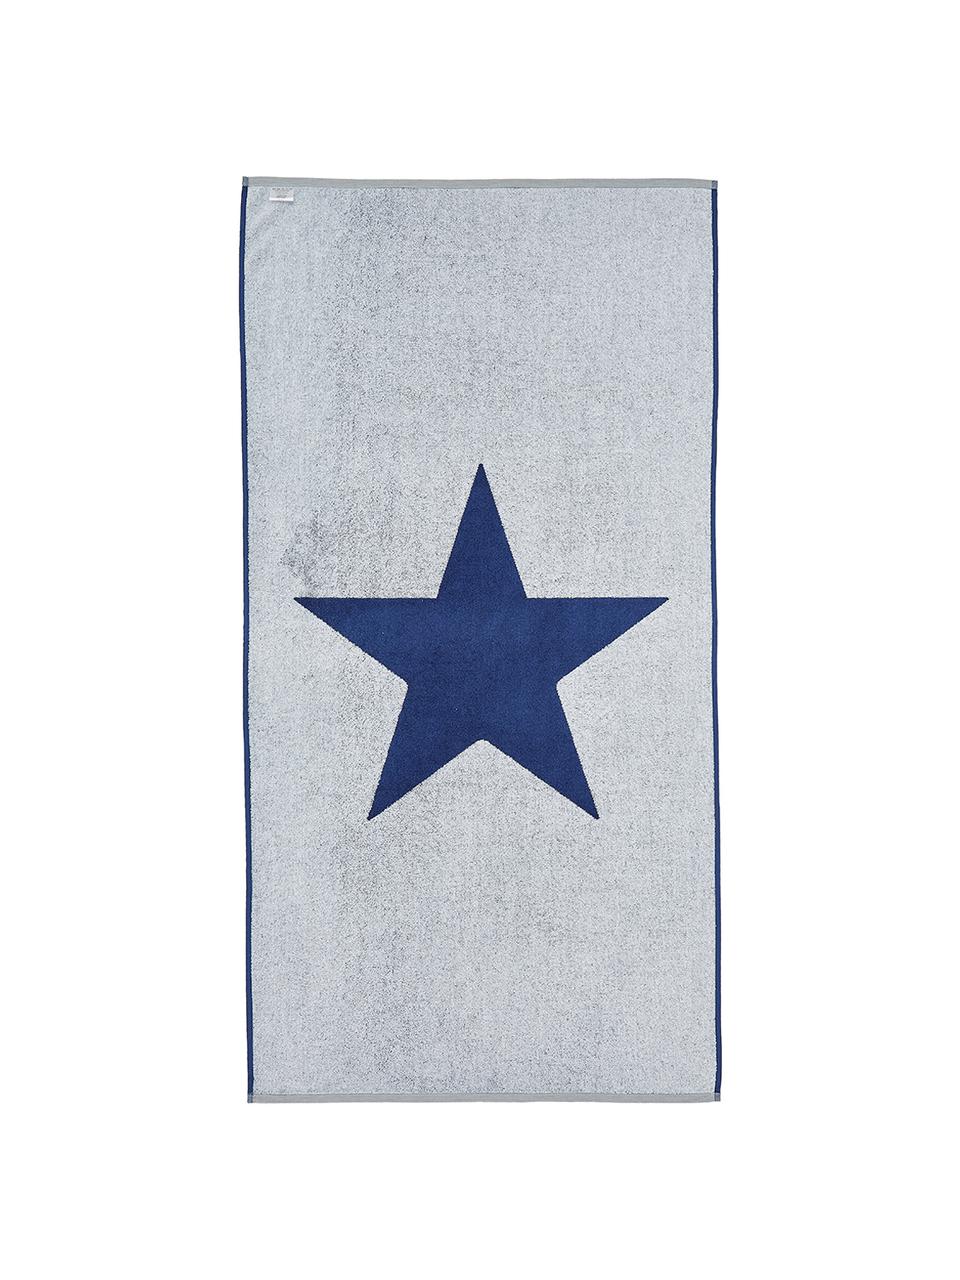 Strandtuch Spork mit Sternen-Motiv, 100% Baumwolle
leichte Qualität 380 g/m², Blau, Weiß, 80 x 160 cm